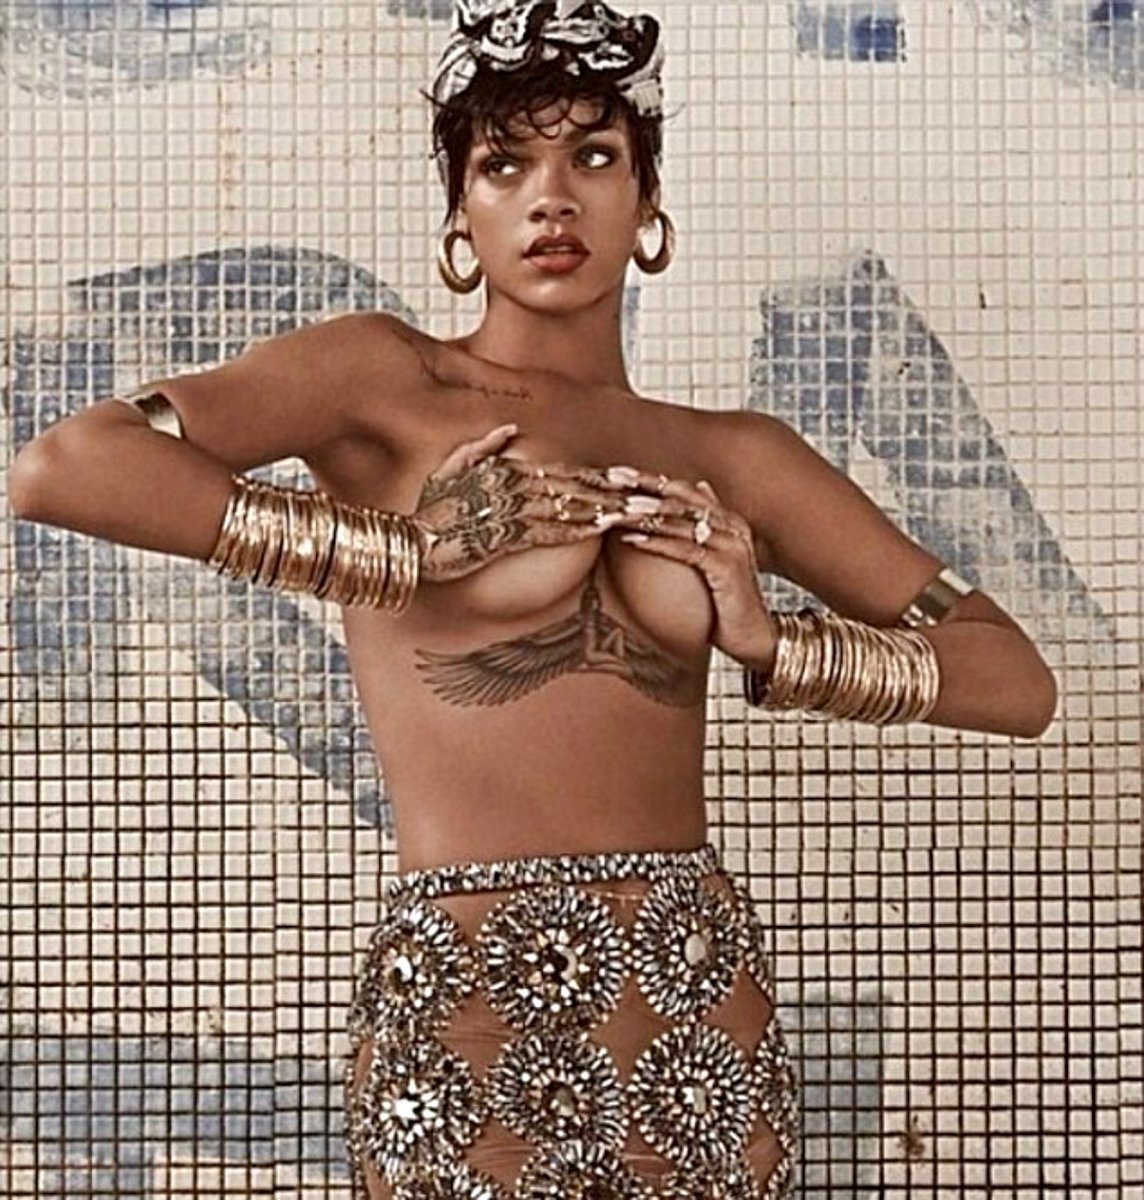 Η νέα καυτή φωτογράφηση της Rihanna αναστατώνει τη Βραζιλία